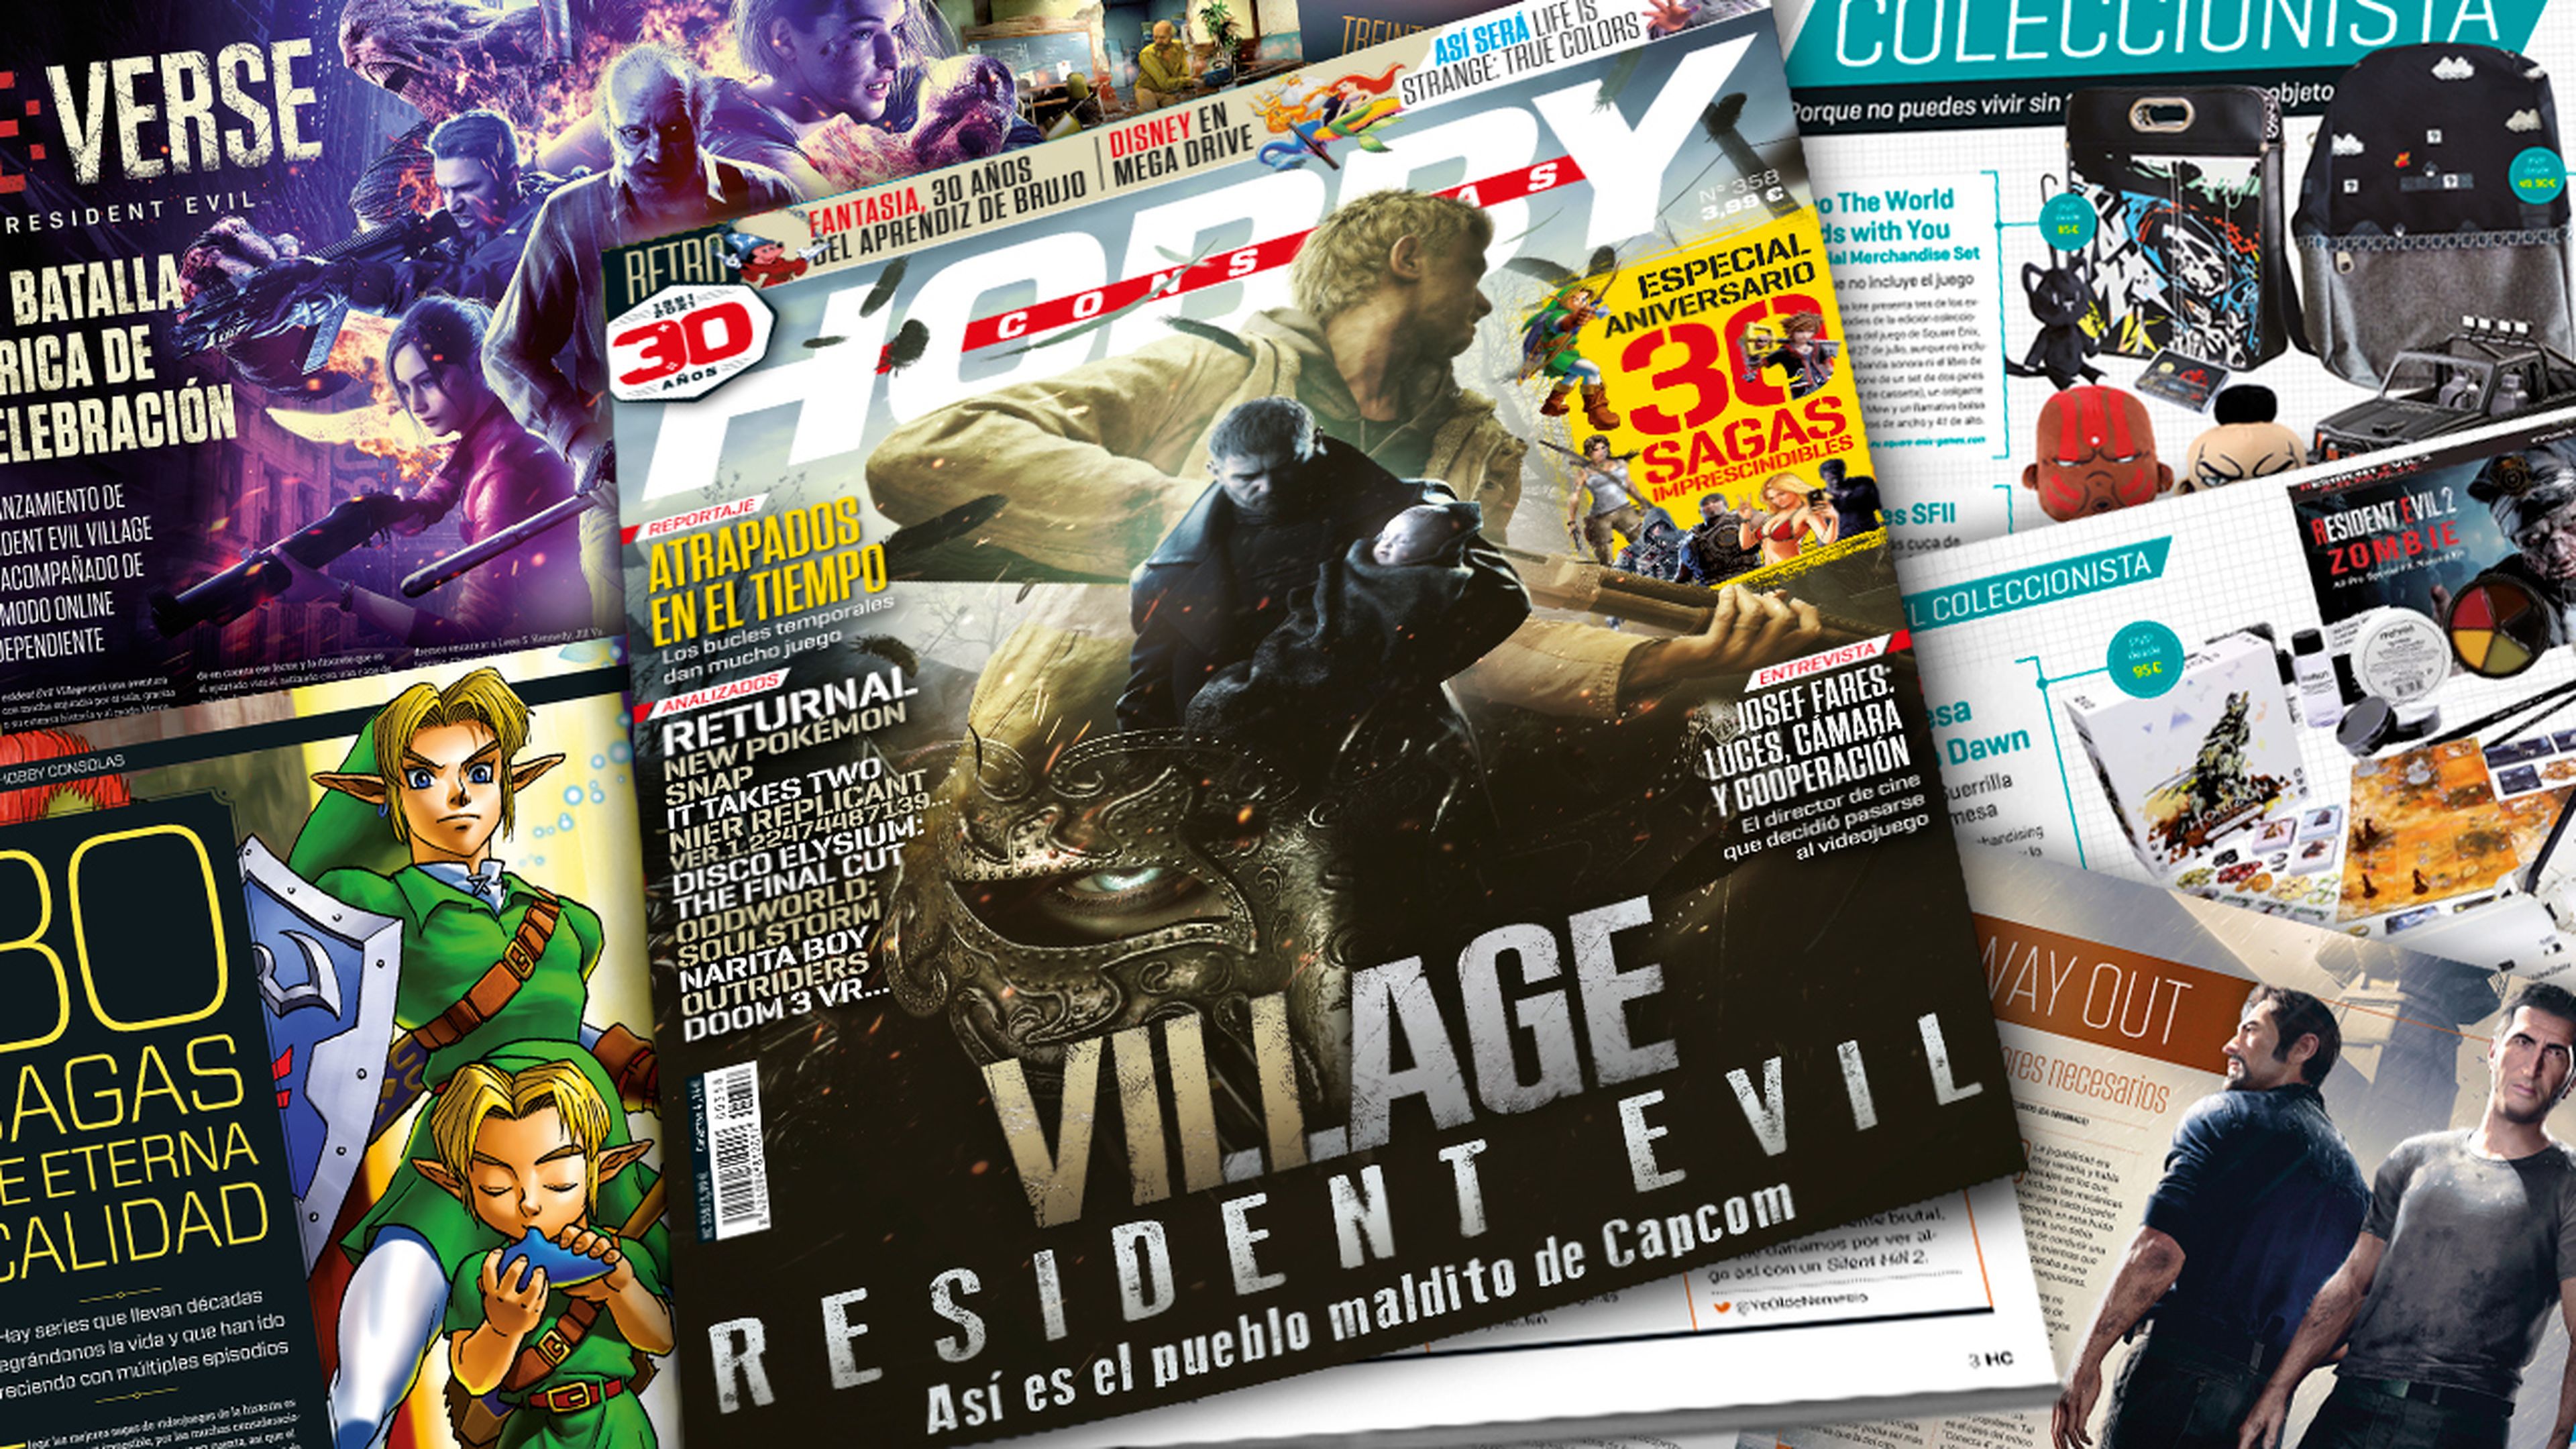 Hobby Consolas 358, a la venta con Resident Evil Village en portada